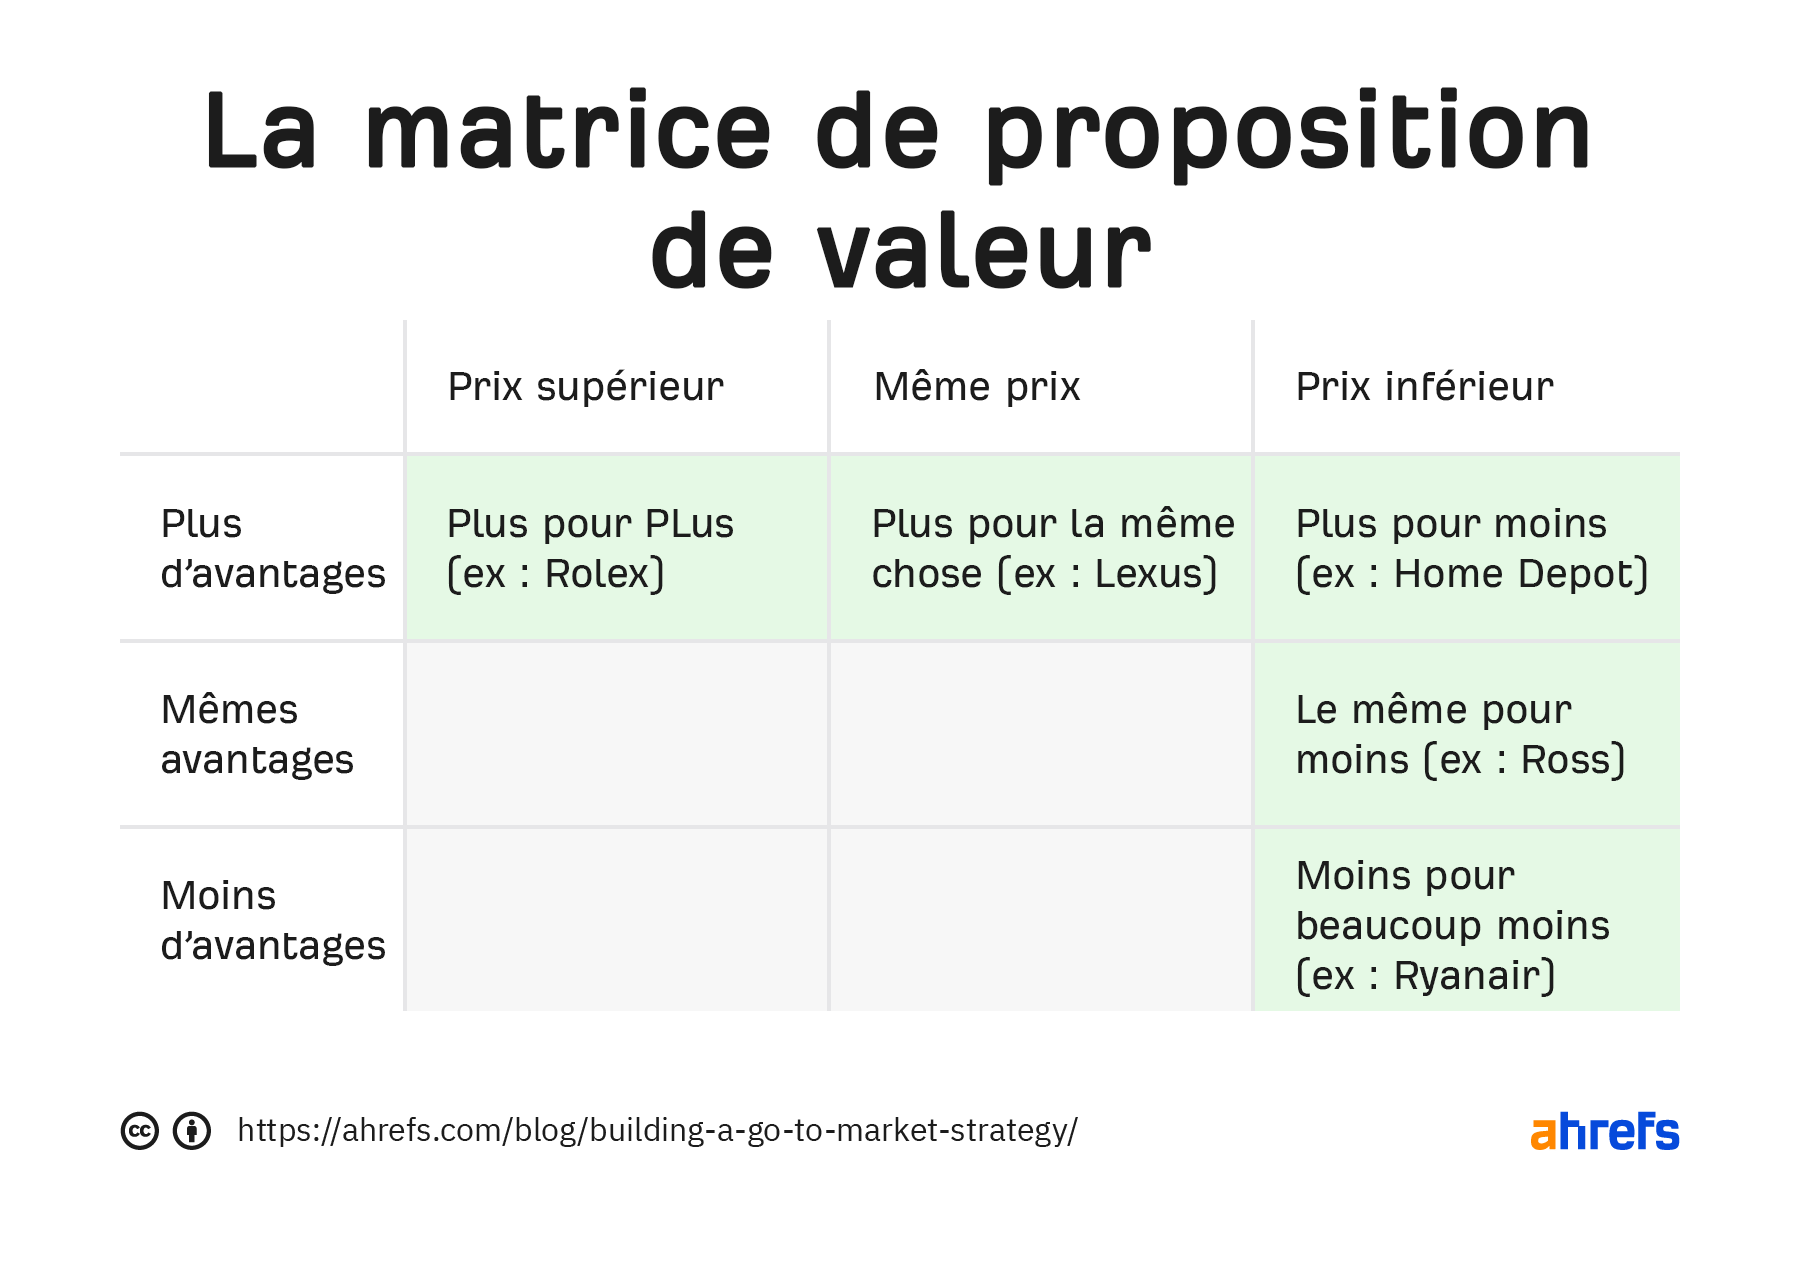 Tableau de matrice de proposition de valeur. Les trois colonnes sont"prix plus élévé," "meme prix," et "prix plus bas." les lignes sont "plus d’avantages," "mêmes avantages," et "moins d’avantages"